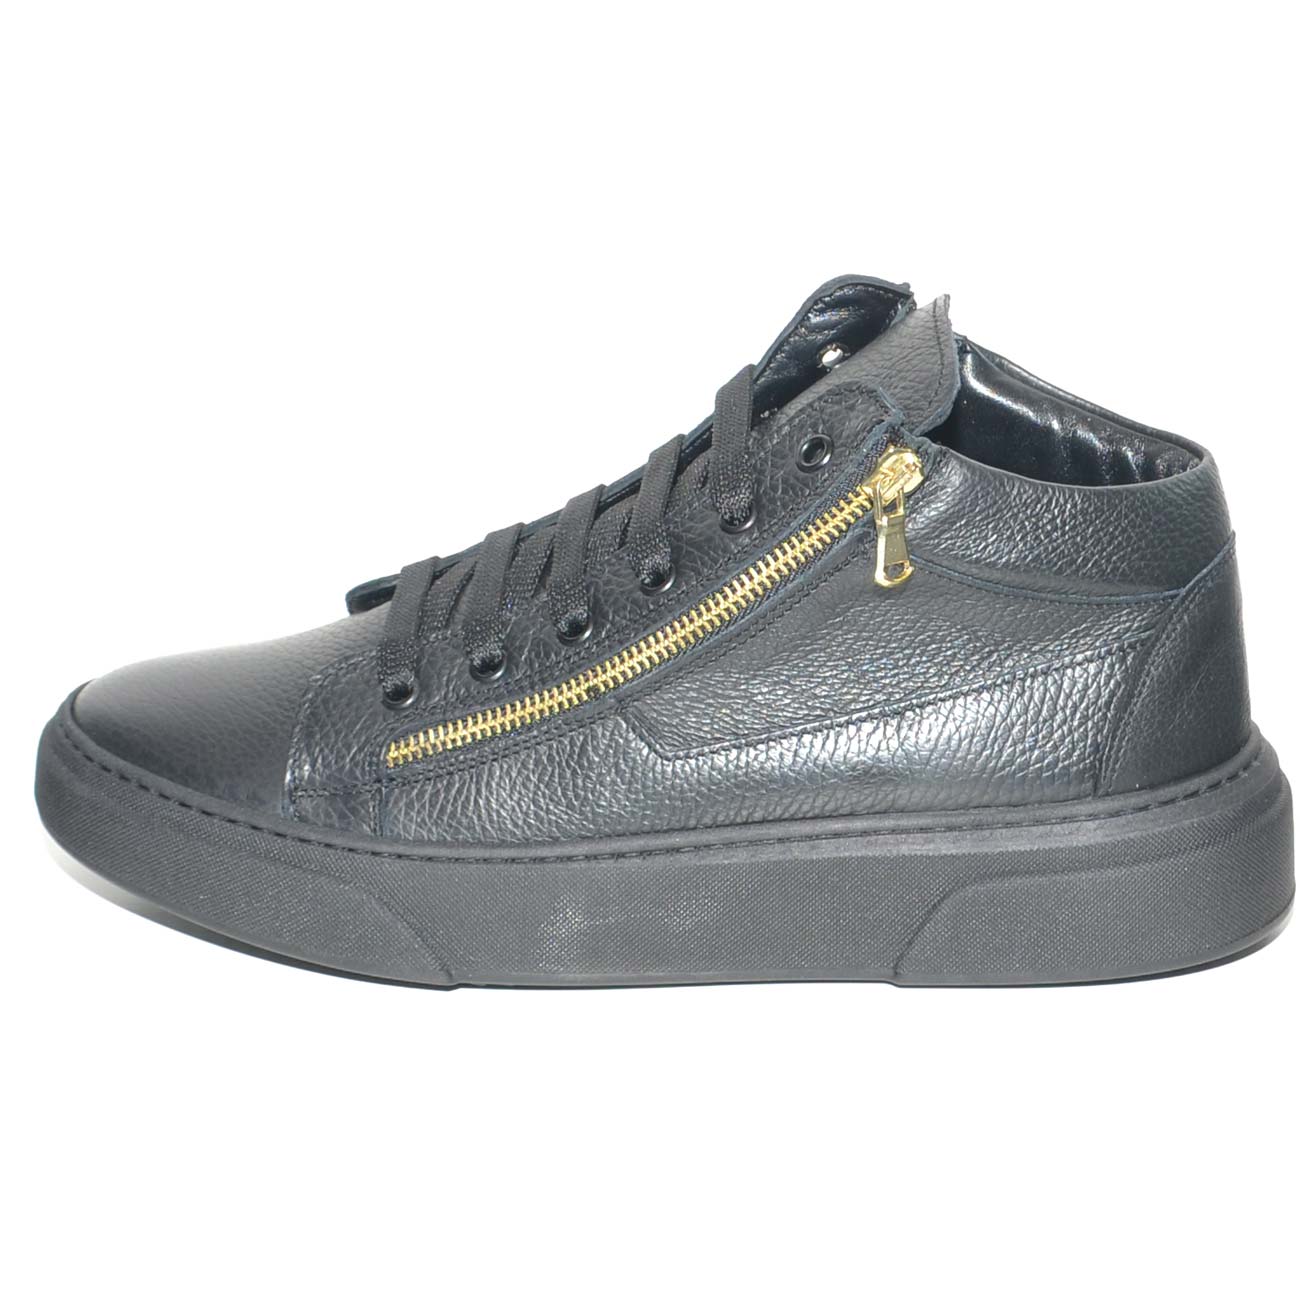 Sneakers alta in vera pelle bortolata di nappa con doppia zip oro fondo underground uomo stile fatte a mano.